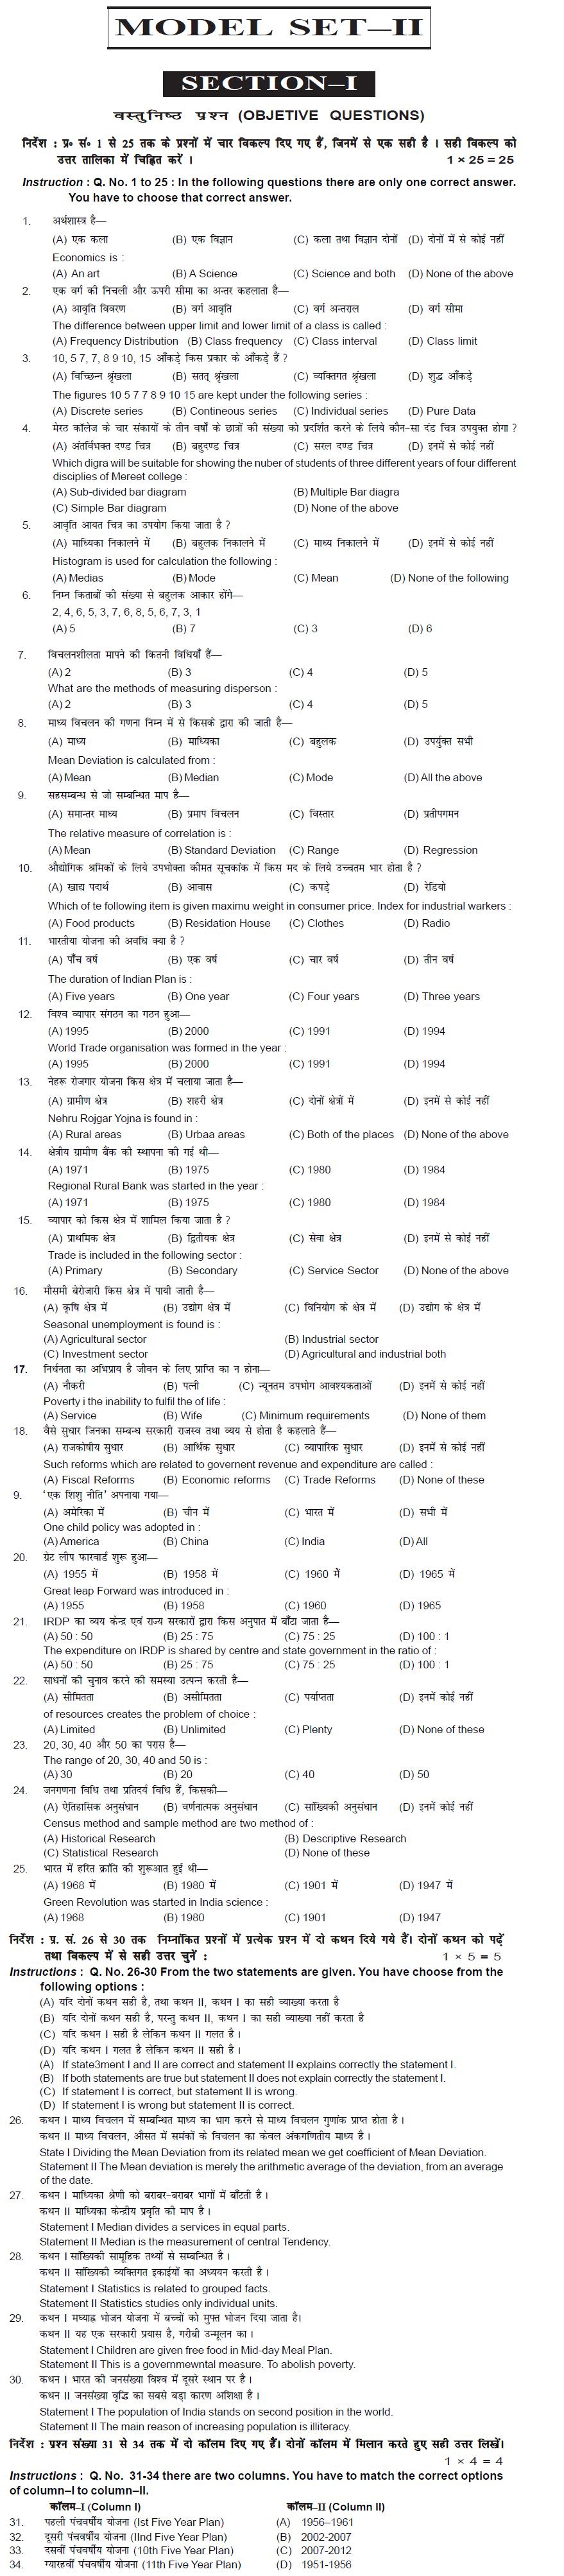 Bihar Board Class XI Commerce Model Question Papers - Economics